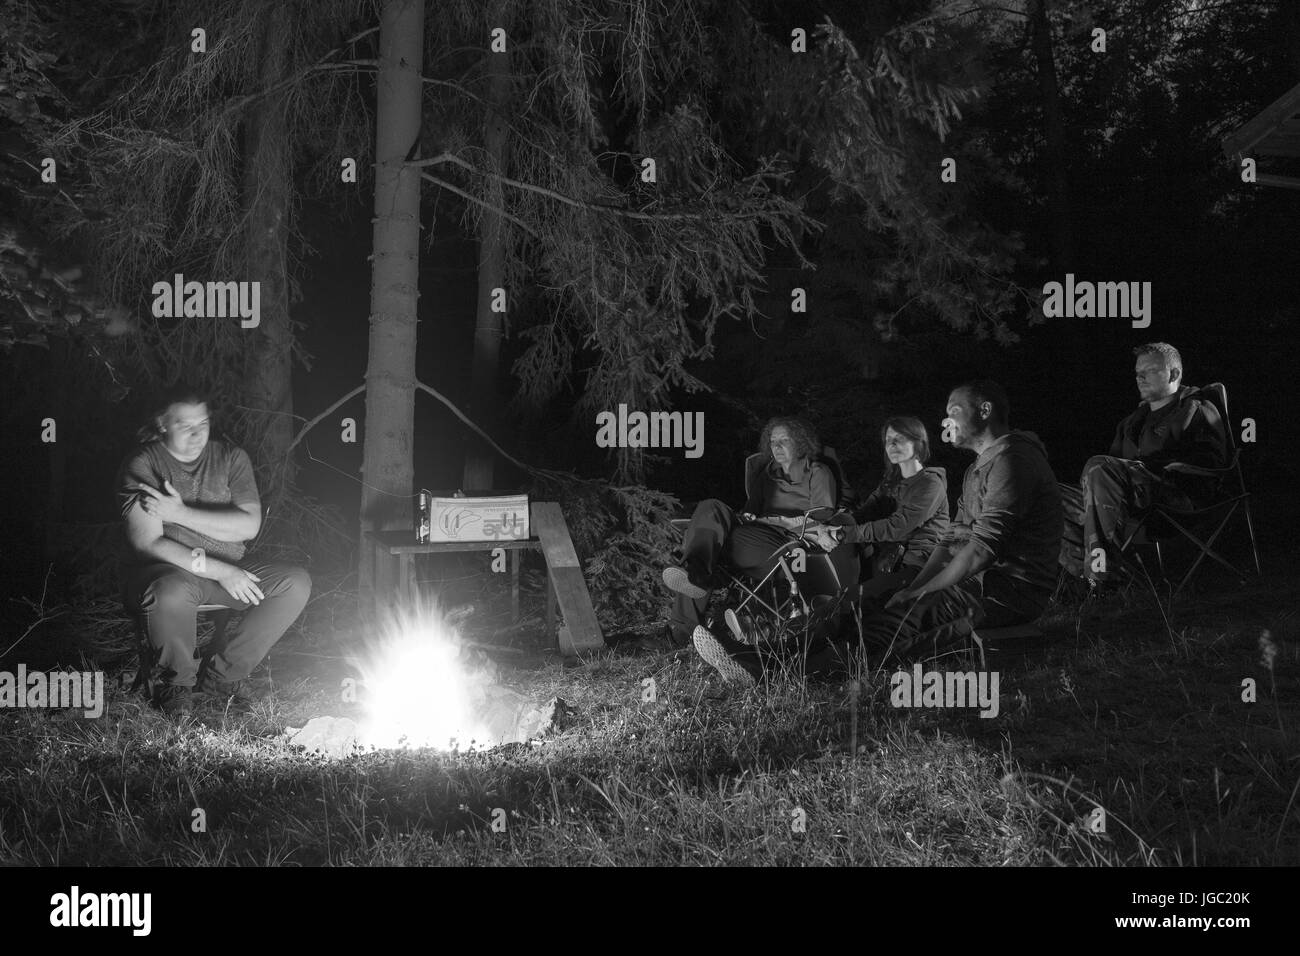 TUKLEKY, Repubblica Ceca - 1 Luglio 2017: gruppo di adulti attorno a una buca per il fuoco nel bosco di notte del 1 luglio 2017 nel villaggio di Tukleky, Regione di Vysocina. Foto Stock